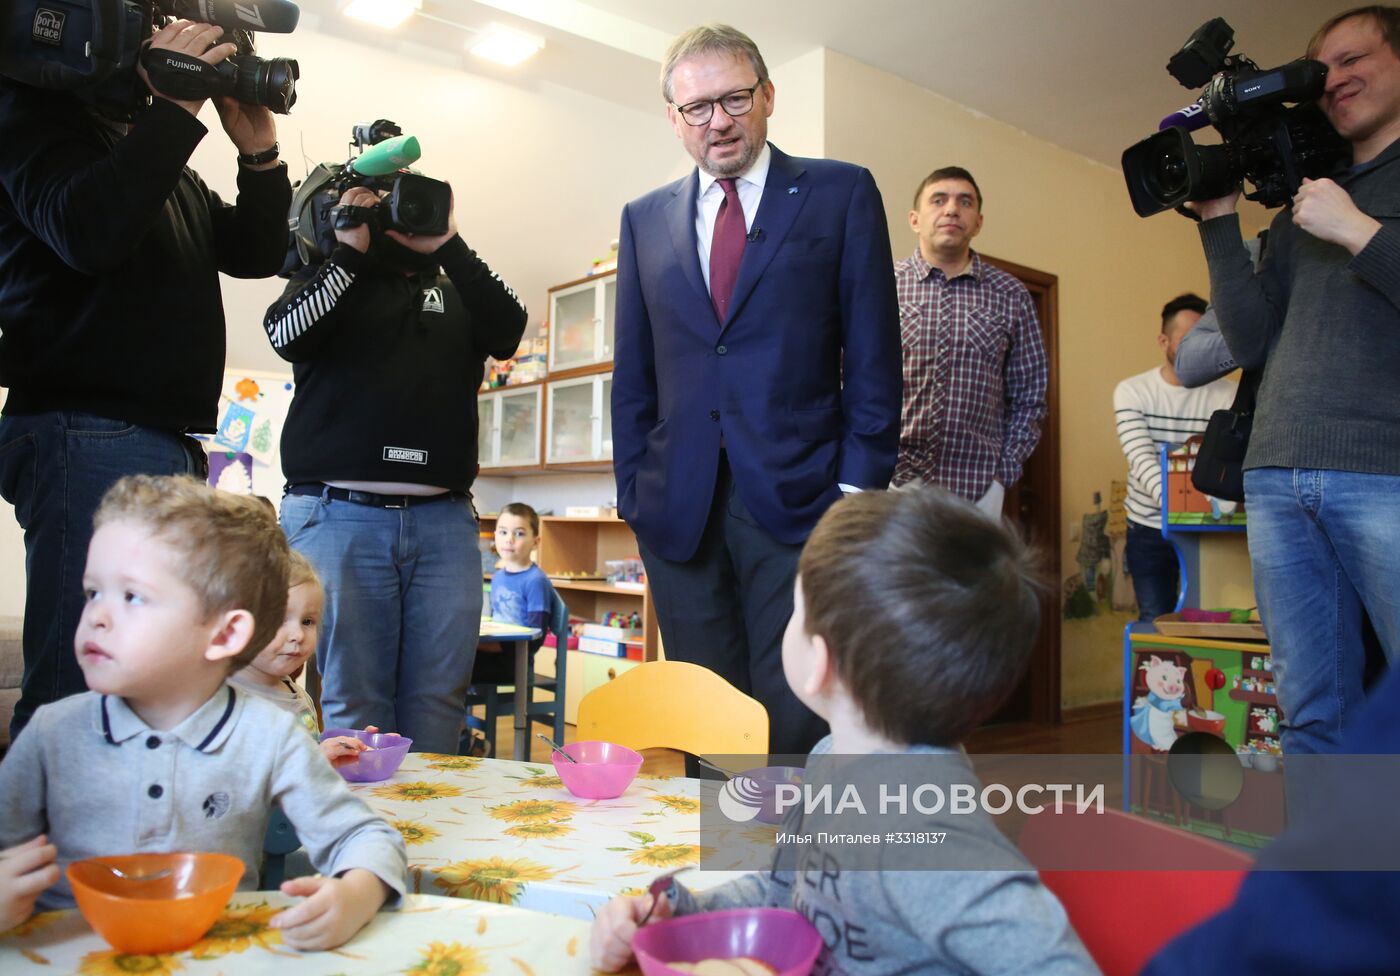 Кандидат в президенты РФ Б. Титов посетил частный детский сад "Кувшинка"